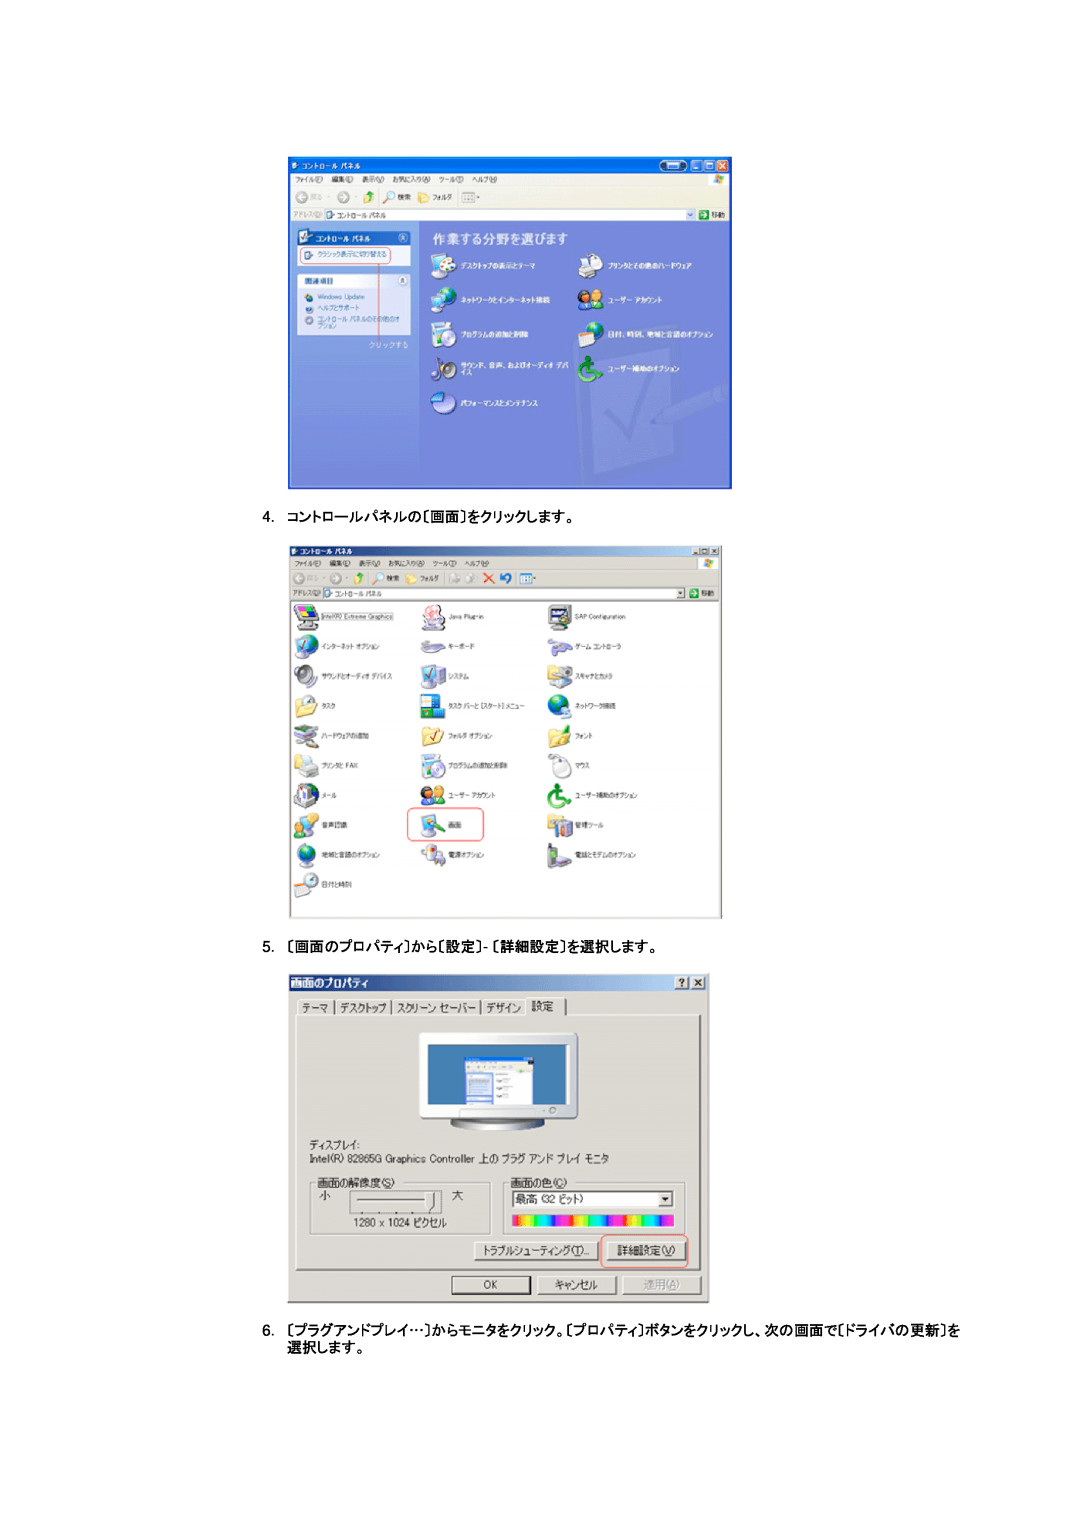 Samsung DI19PSQAQ/XSJ, DI19PSQRV/XSJ, DI17PSQRV/EDC manual 4. コントロールパネルの〔画面〕をクリックします。 5. 〔画面のプロパティ〕から〔設定〕- 〔詳細設定〕を選択します。 